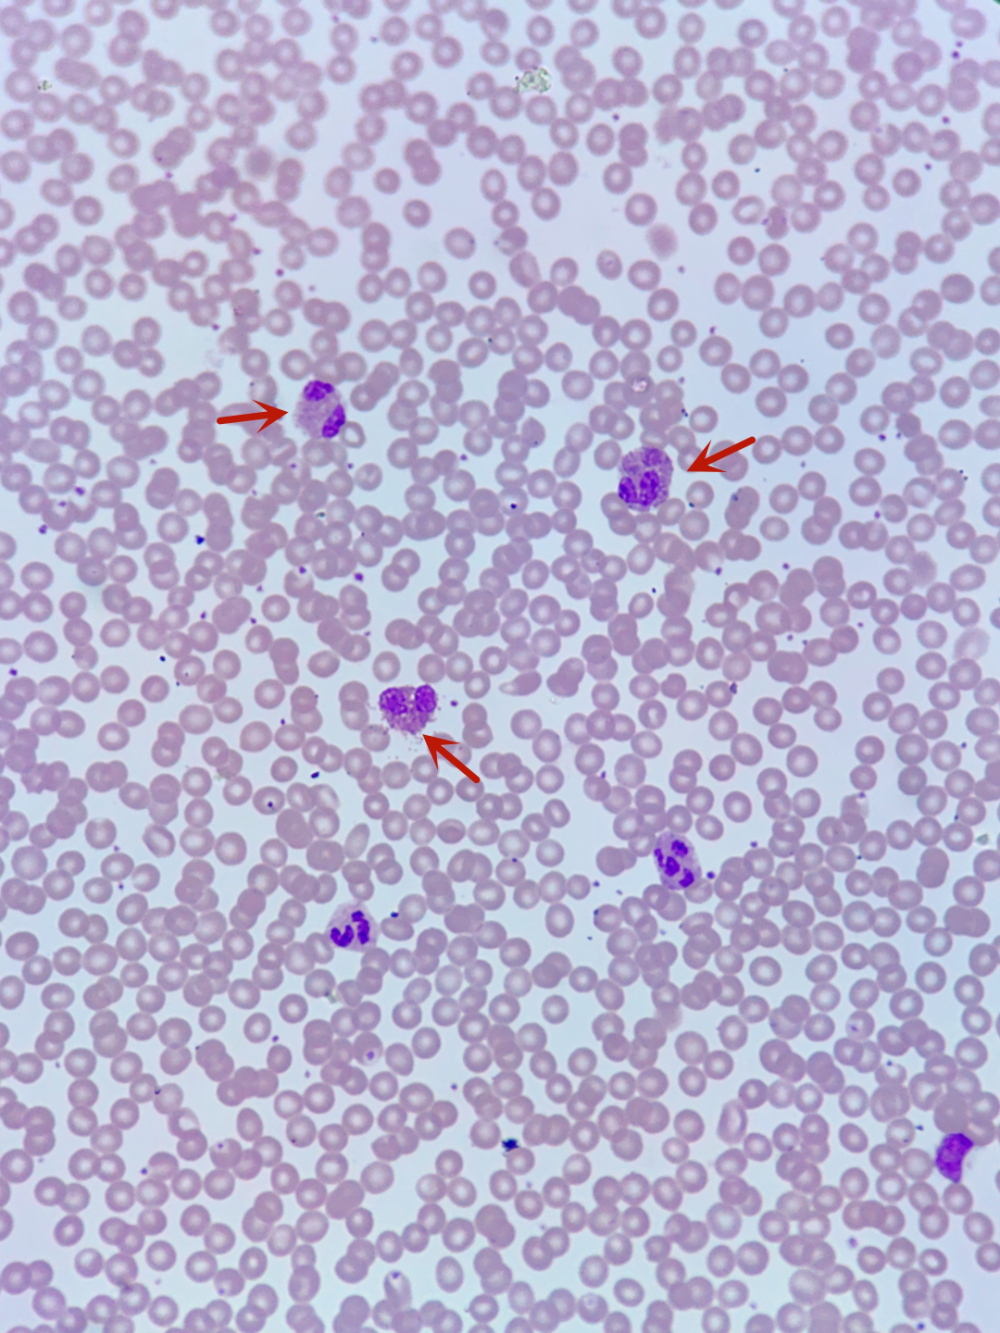 嗜酸性粒细胞红蓝图图片